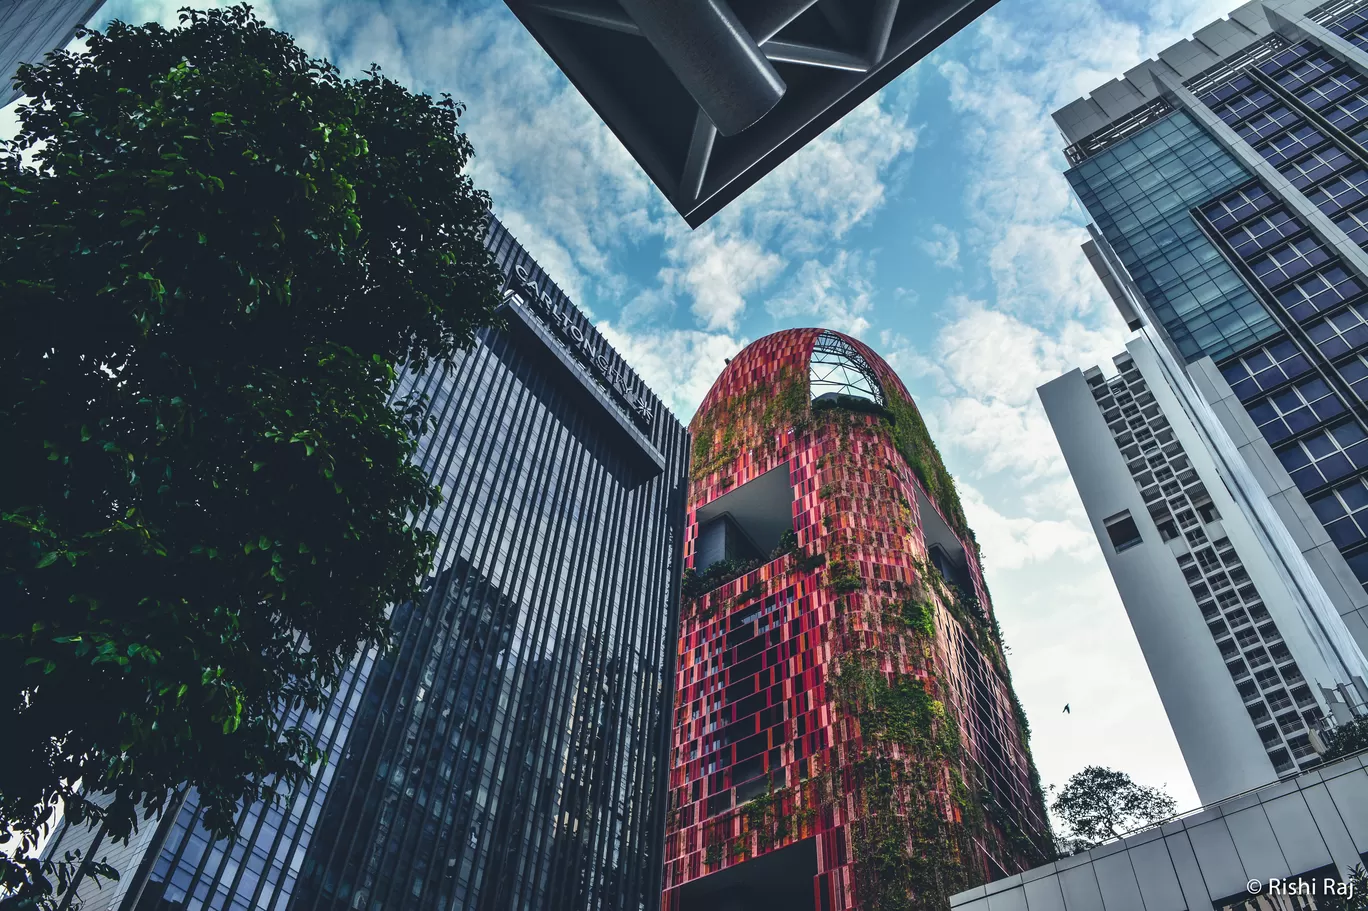 Photo of Singapore By Rishi Raj Singh